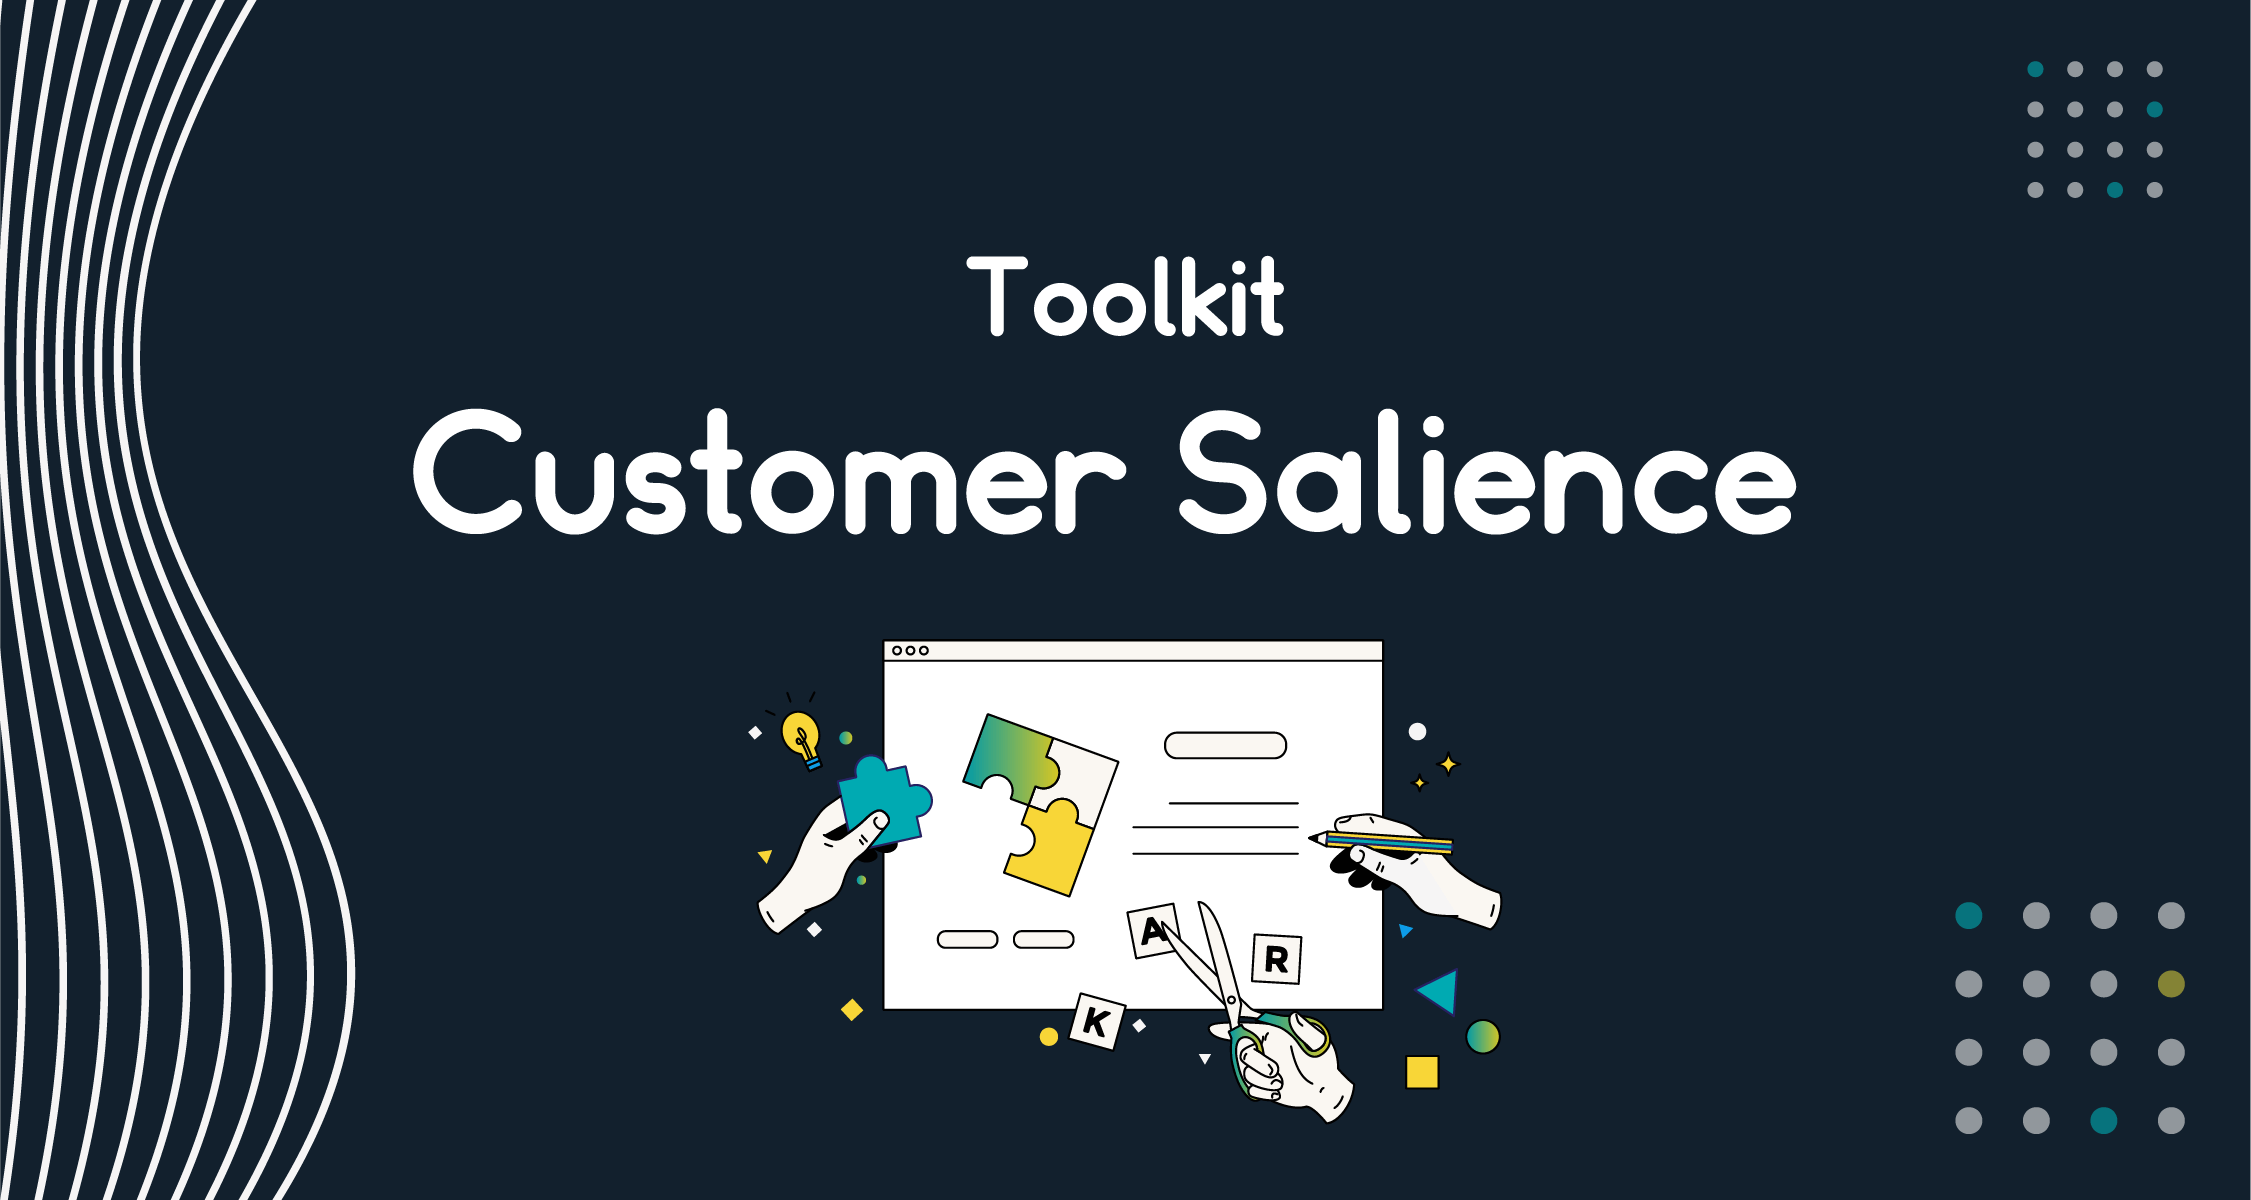 The Customer Salience Toolkit